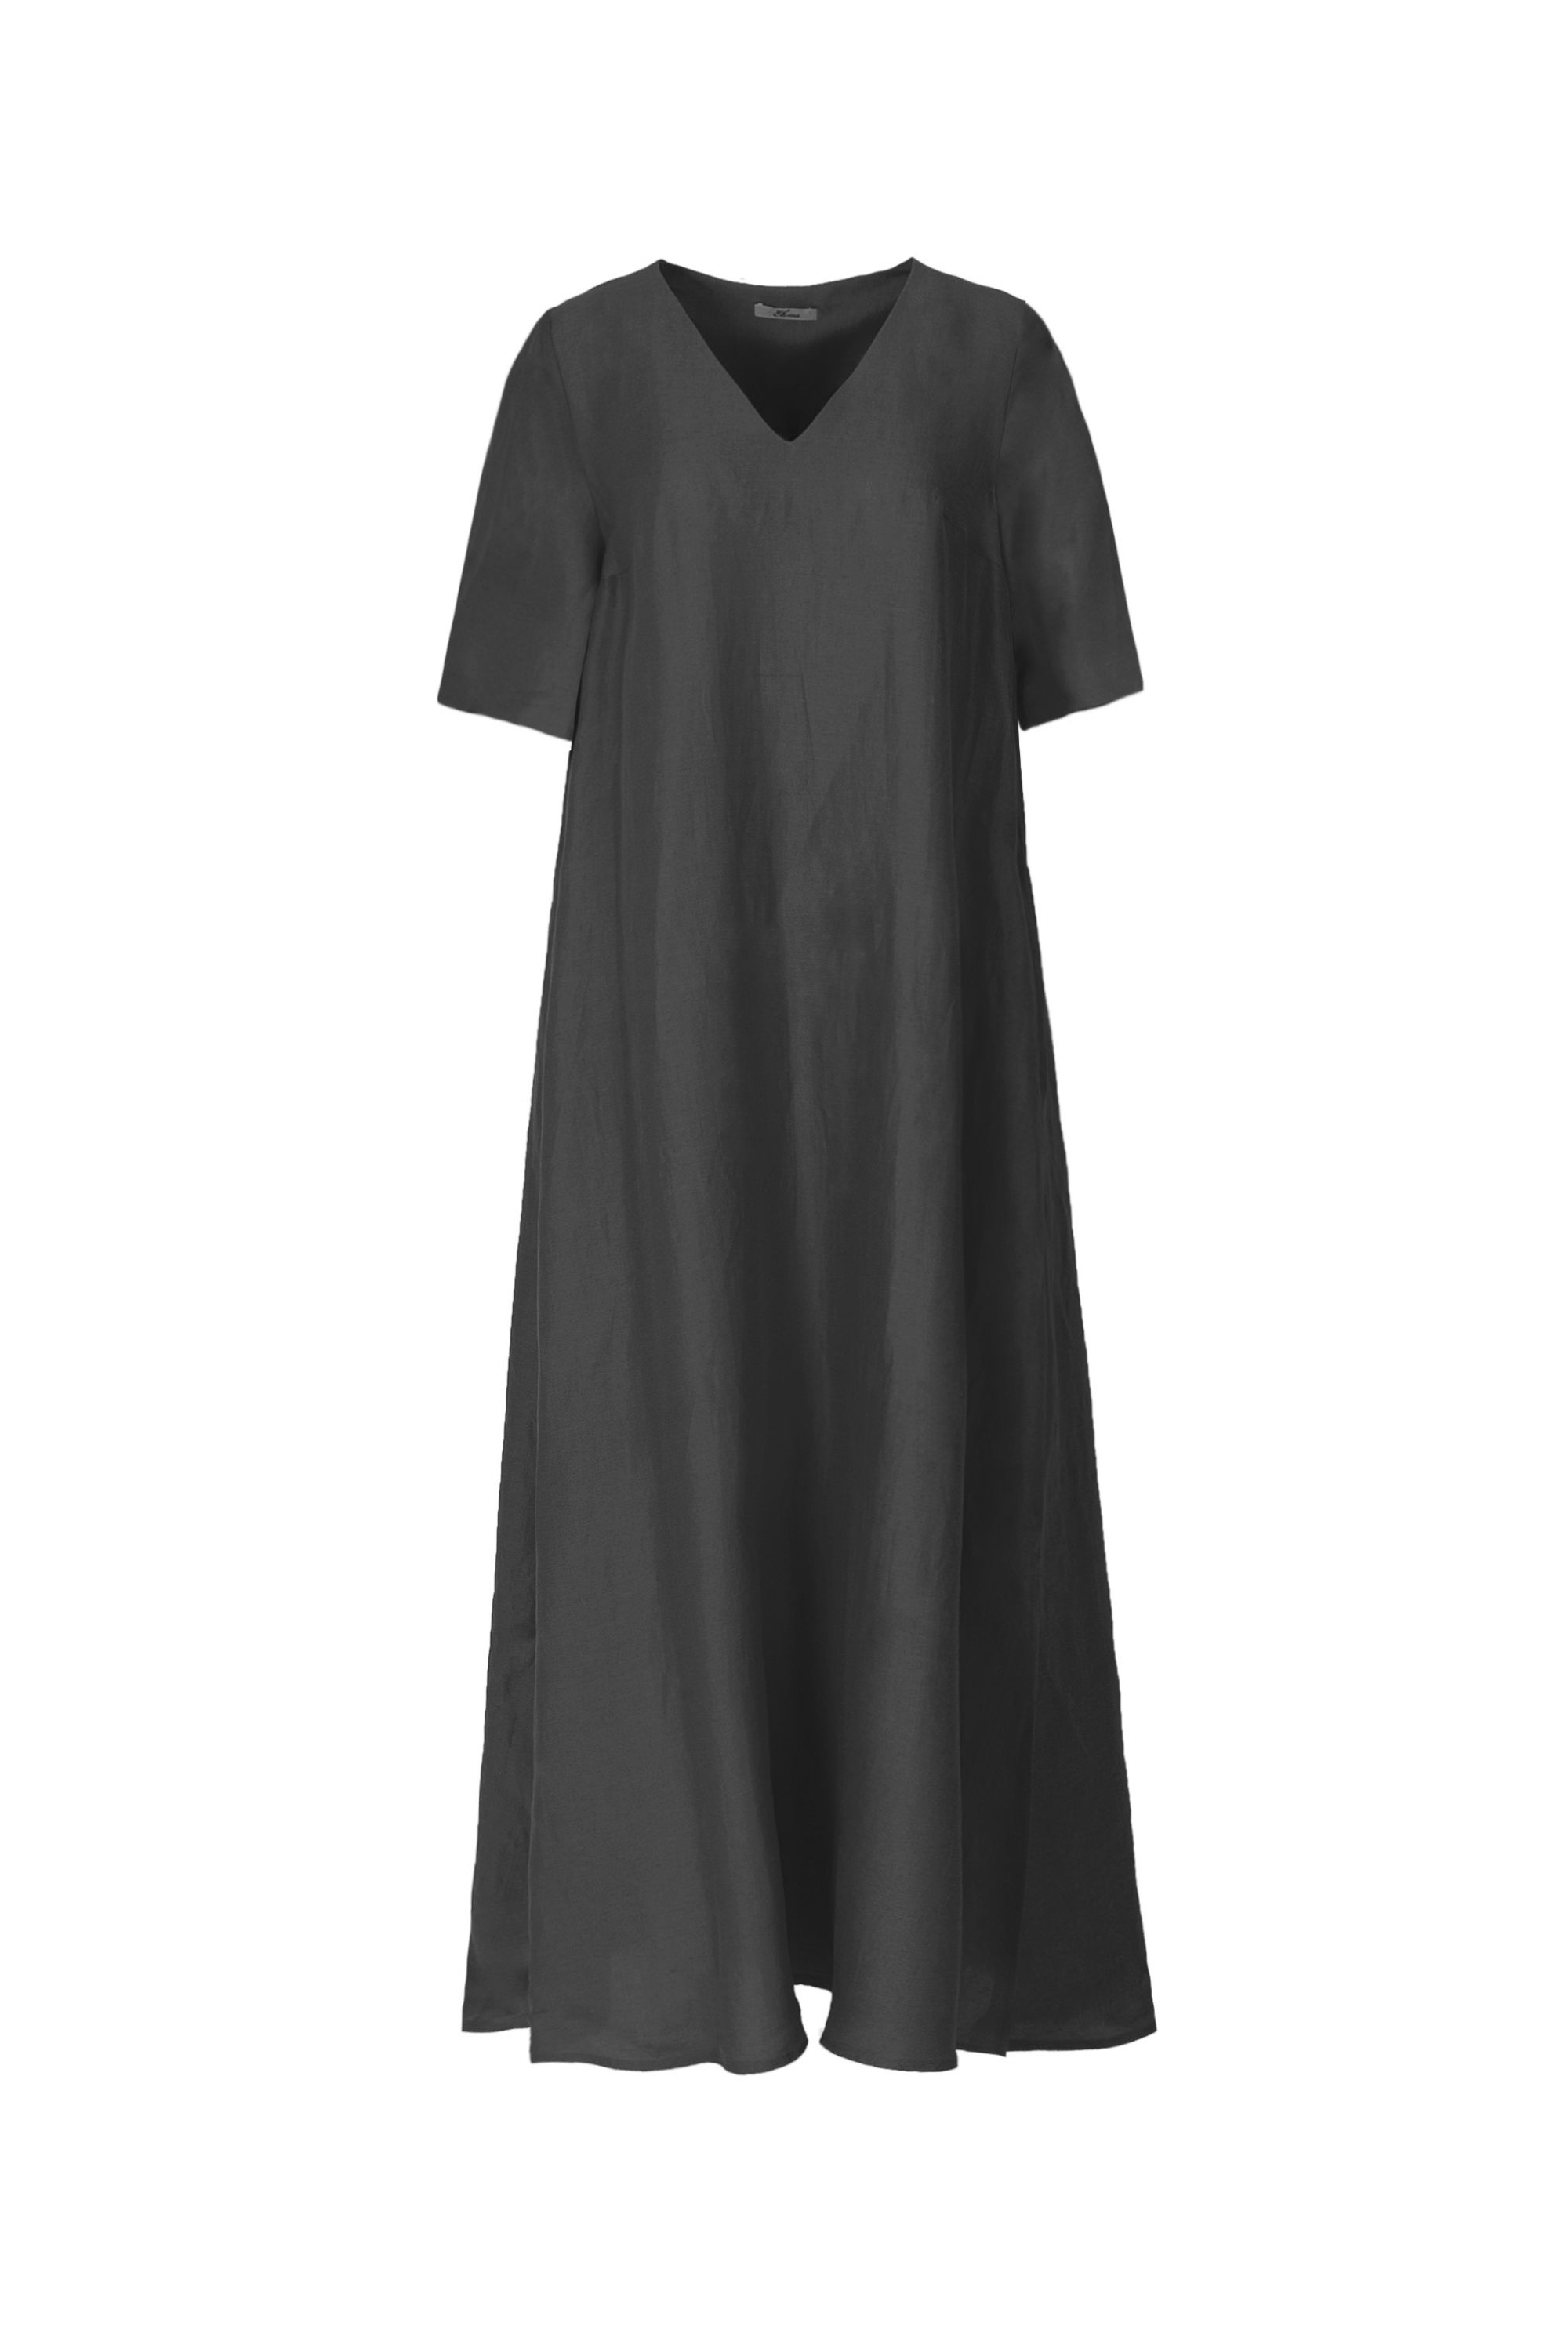 Платье женское 5К-13086-1. Фото 4.